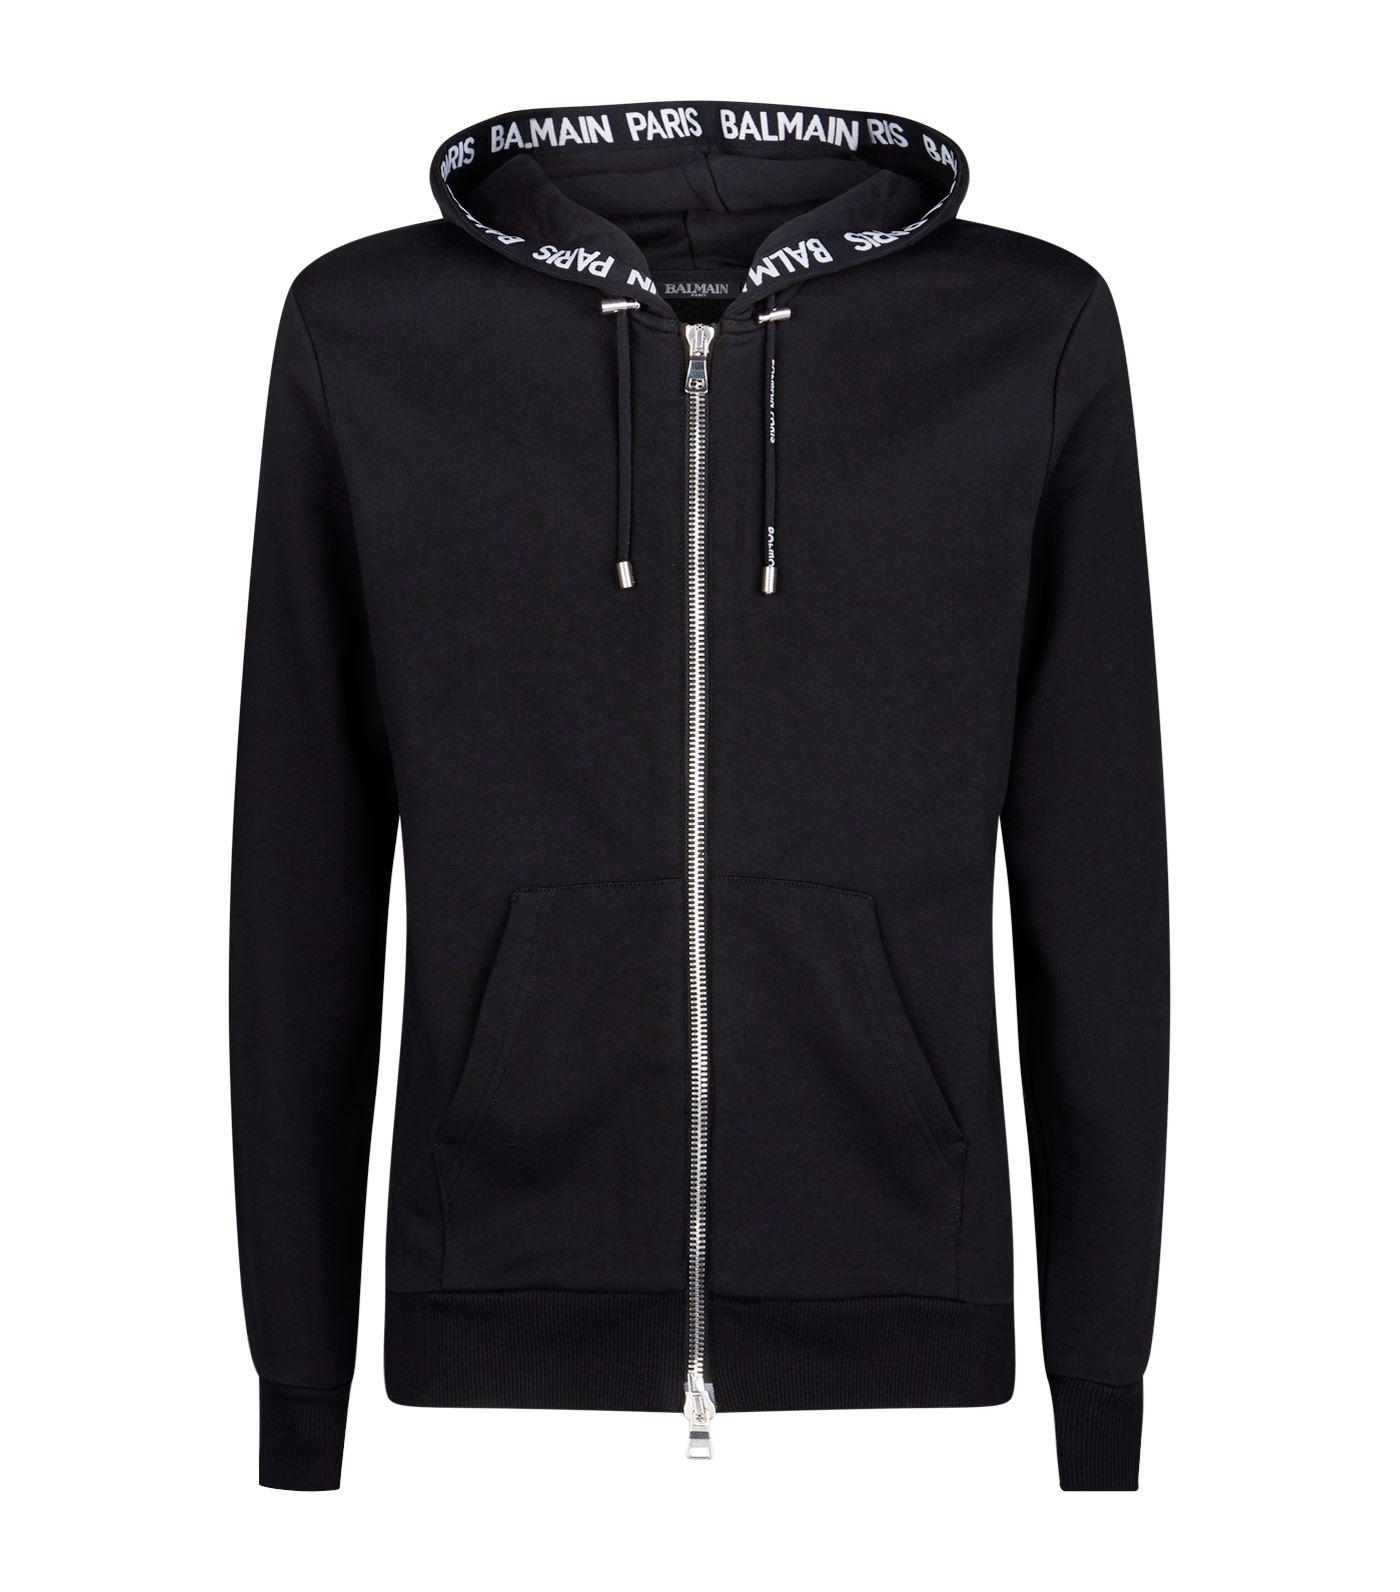 Balmain Cotton Logo Zip-up Hoodie in Black for Men - Lyst